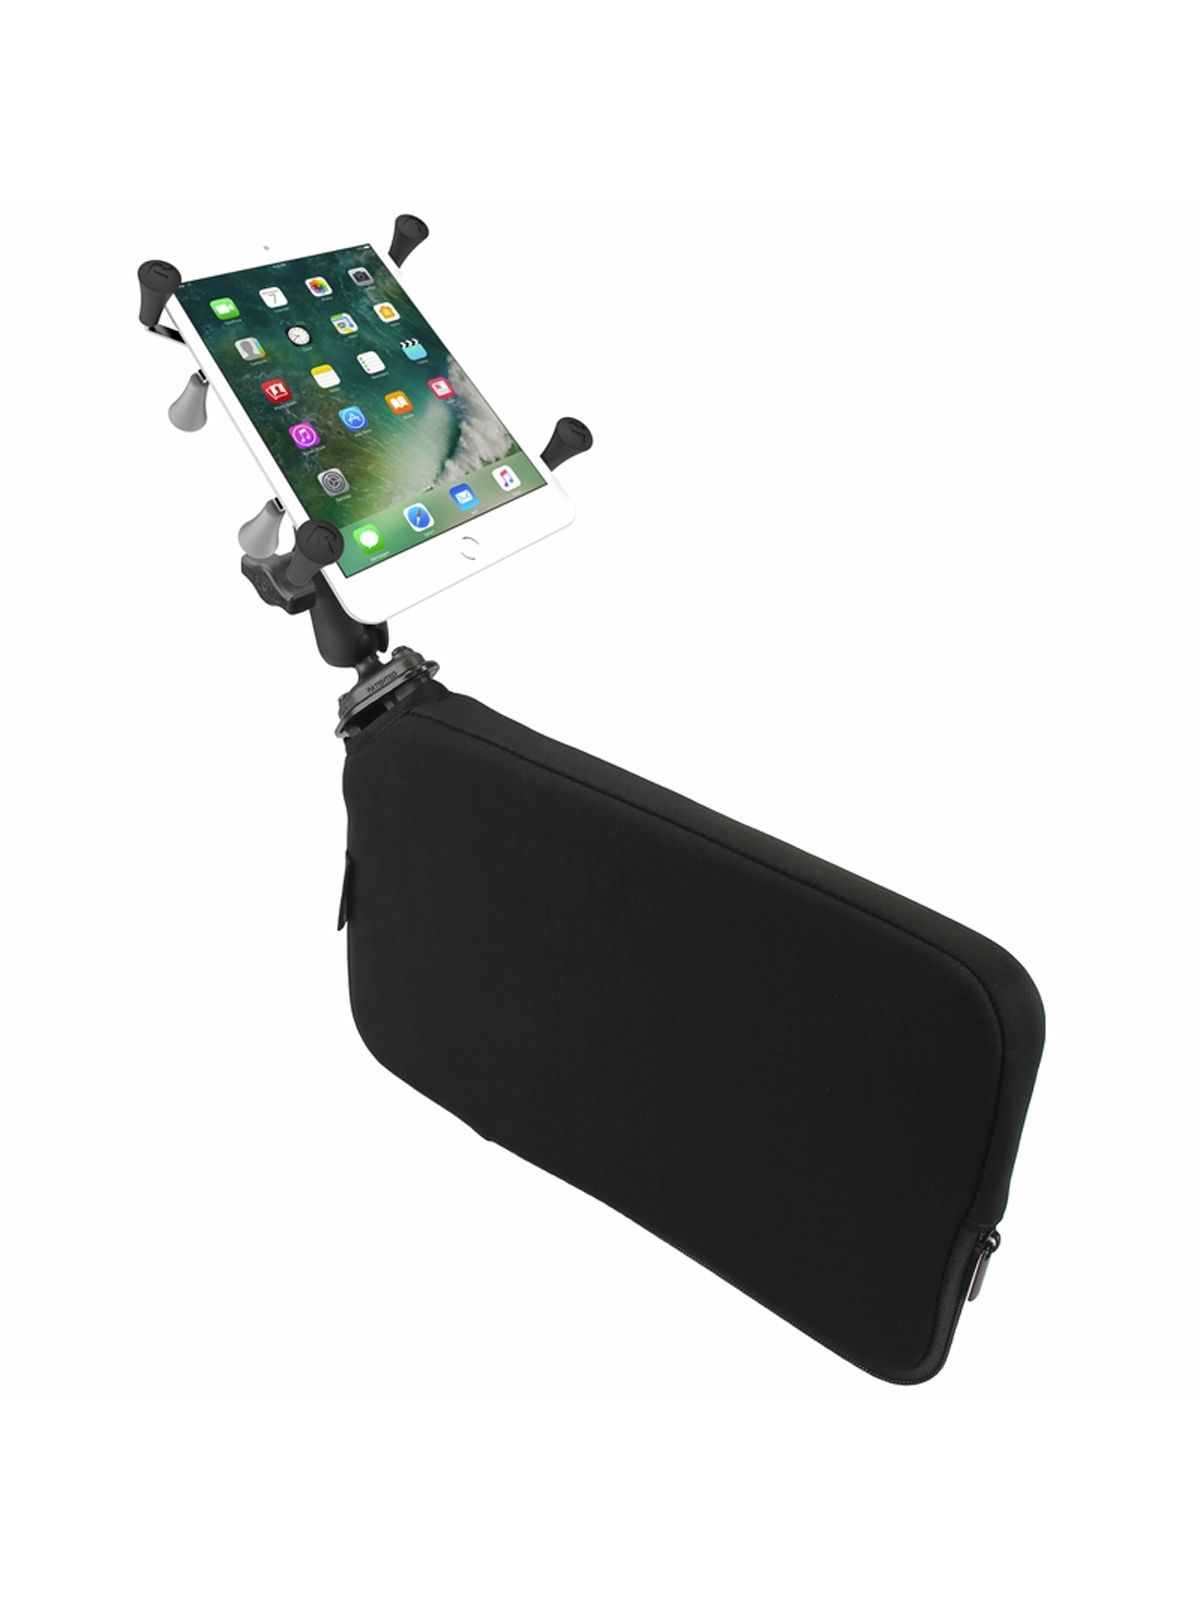 RAM Mounts Fahrzeug-Halterung mit X-Grip Halteklammer für 7-8 Zoll Tablets - B-Kugel (1 Zoll), Tough-Wedge (aufblasbar), mittlerer Verbindungsarm